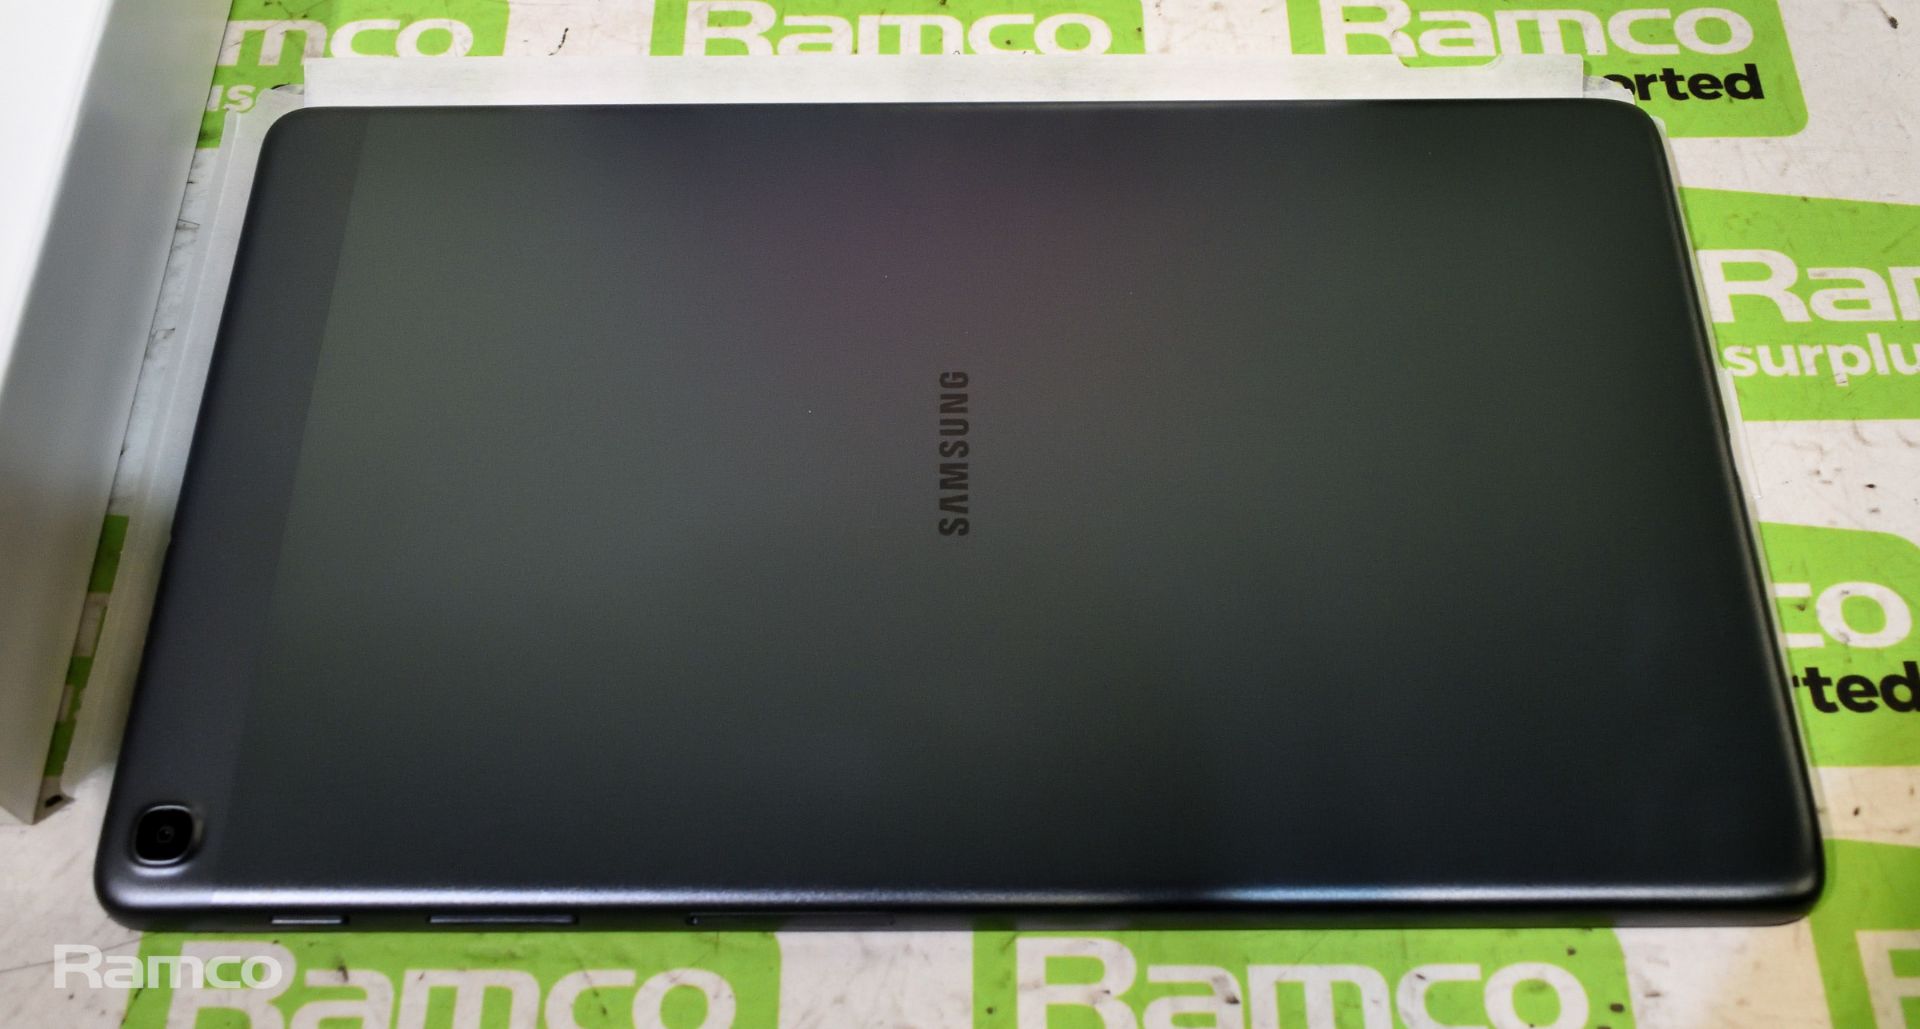 Samsung Galaxy Tab A SM-T510, 10.1 inchTablet, Wifi, 32GB, 2GB RAM, 8MP AF + 5MP, Black - Image 3 of 3